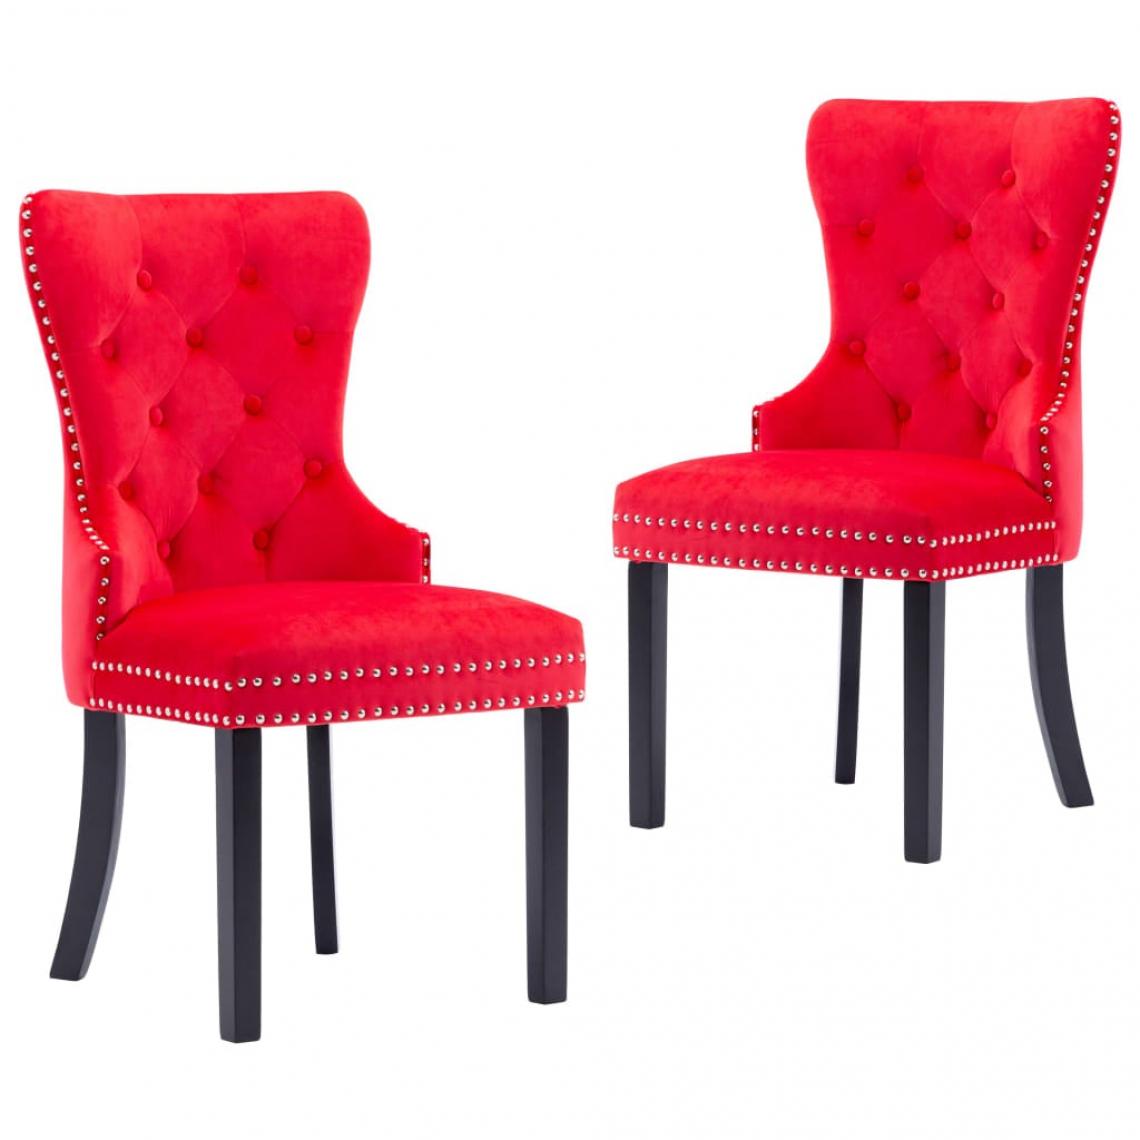 Decoshop26 - Lot de 2 chaises de salle à manger cuisine design classique velours rouge CDS021033 - Chaises